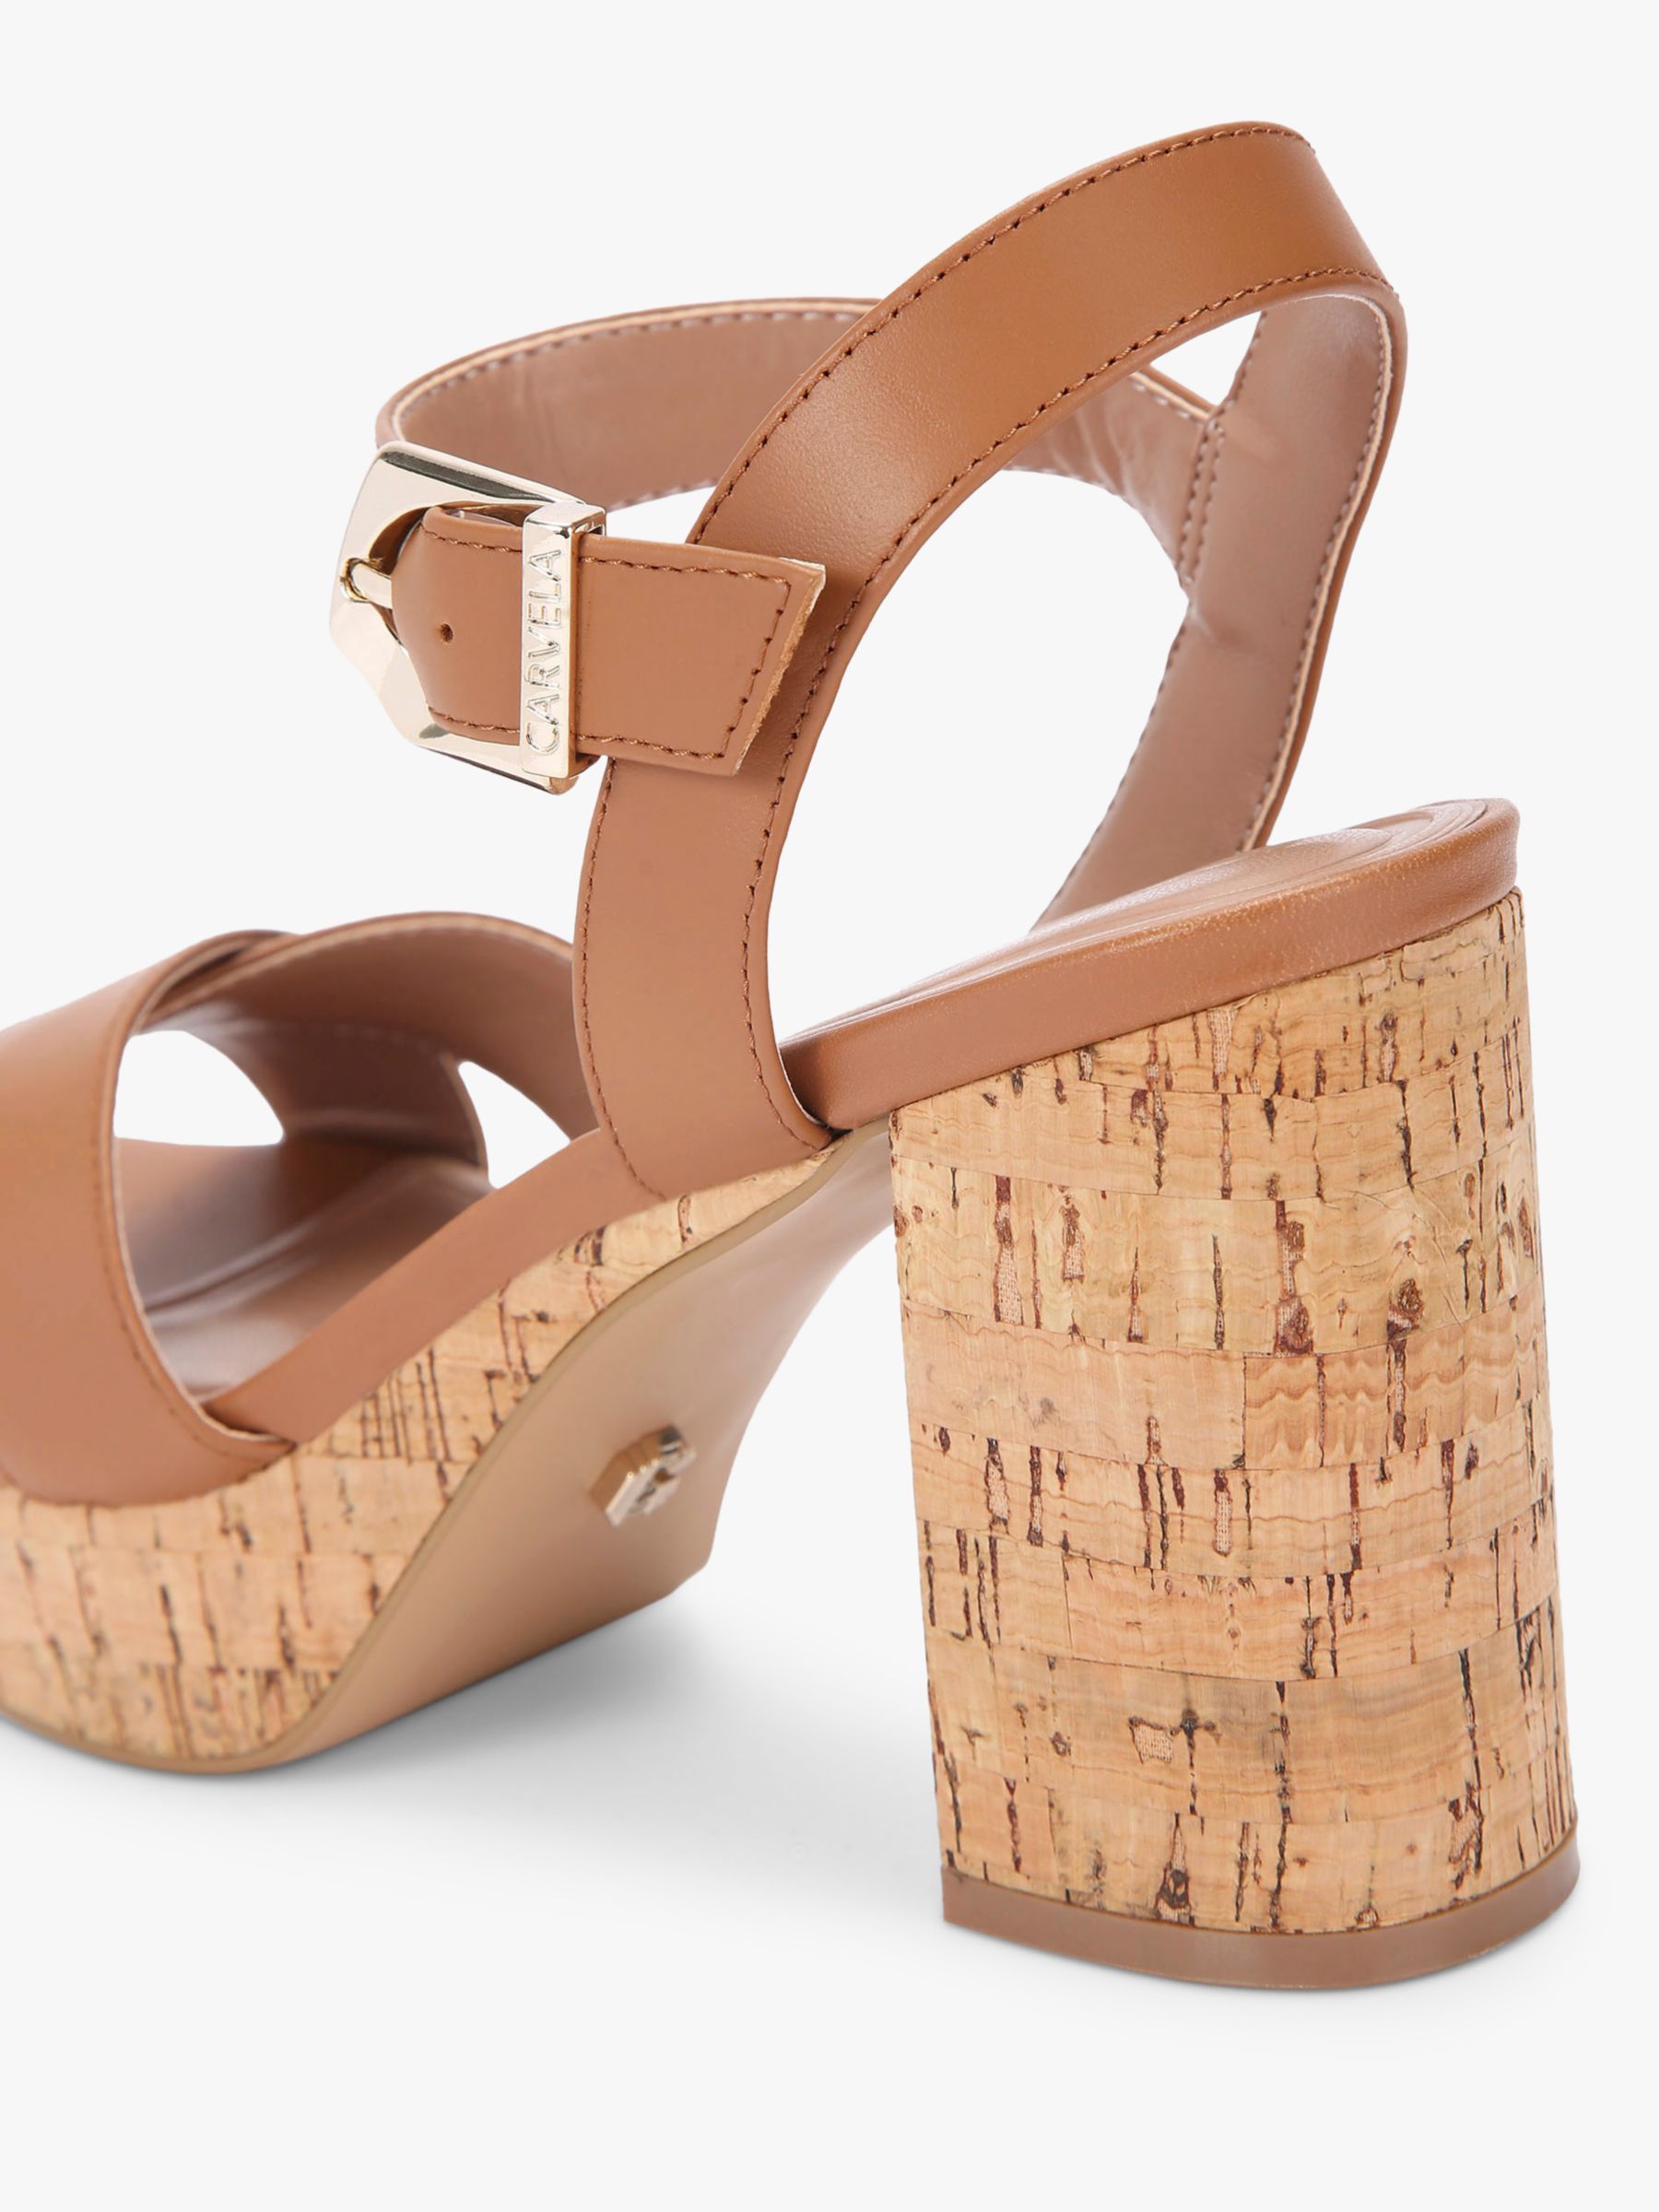 Buy Carvela Serafina 100 Cork Platform Sandals, Tan Online at johnlewis.com